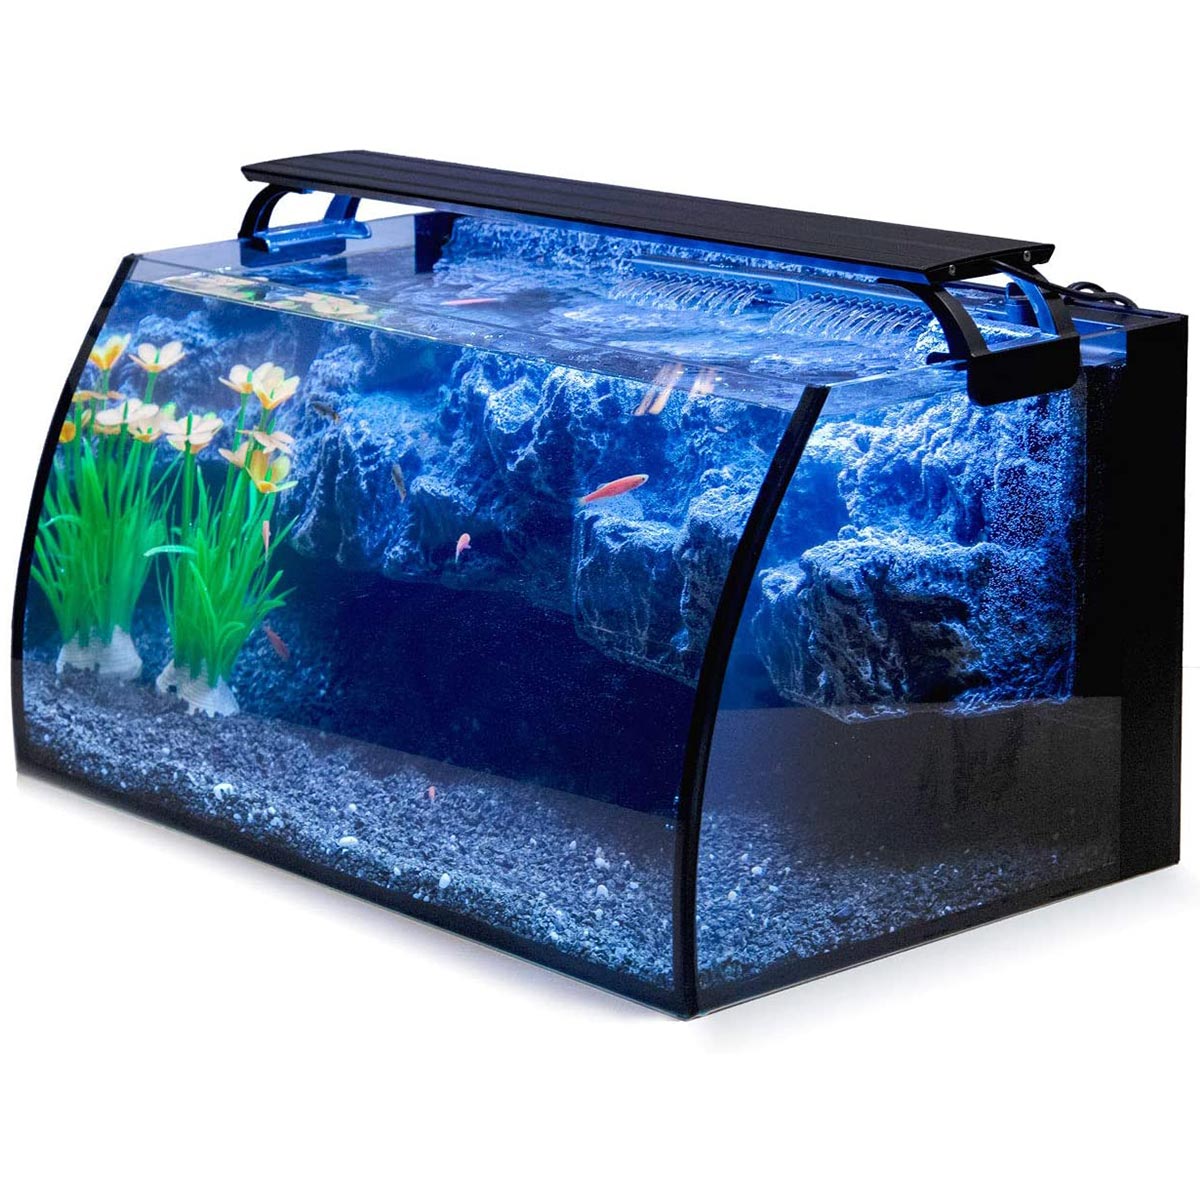 pretty betta fish tanks